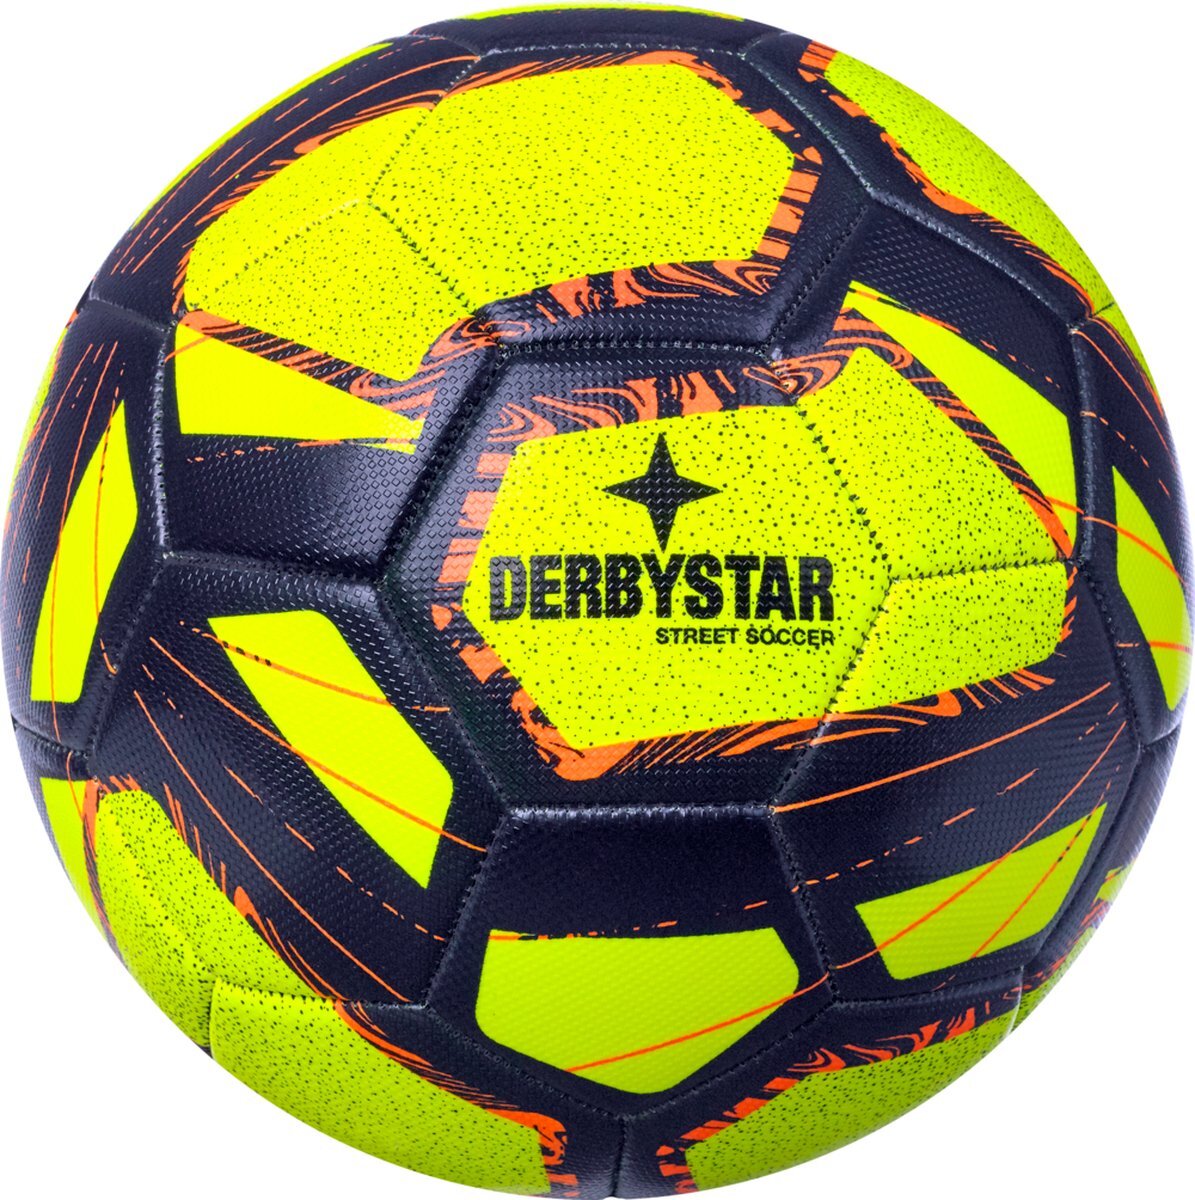 Derbystar Street Soccer voetbalballen geel blauw oranje 5